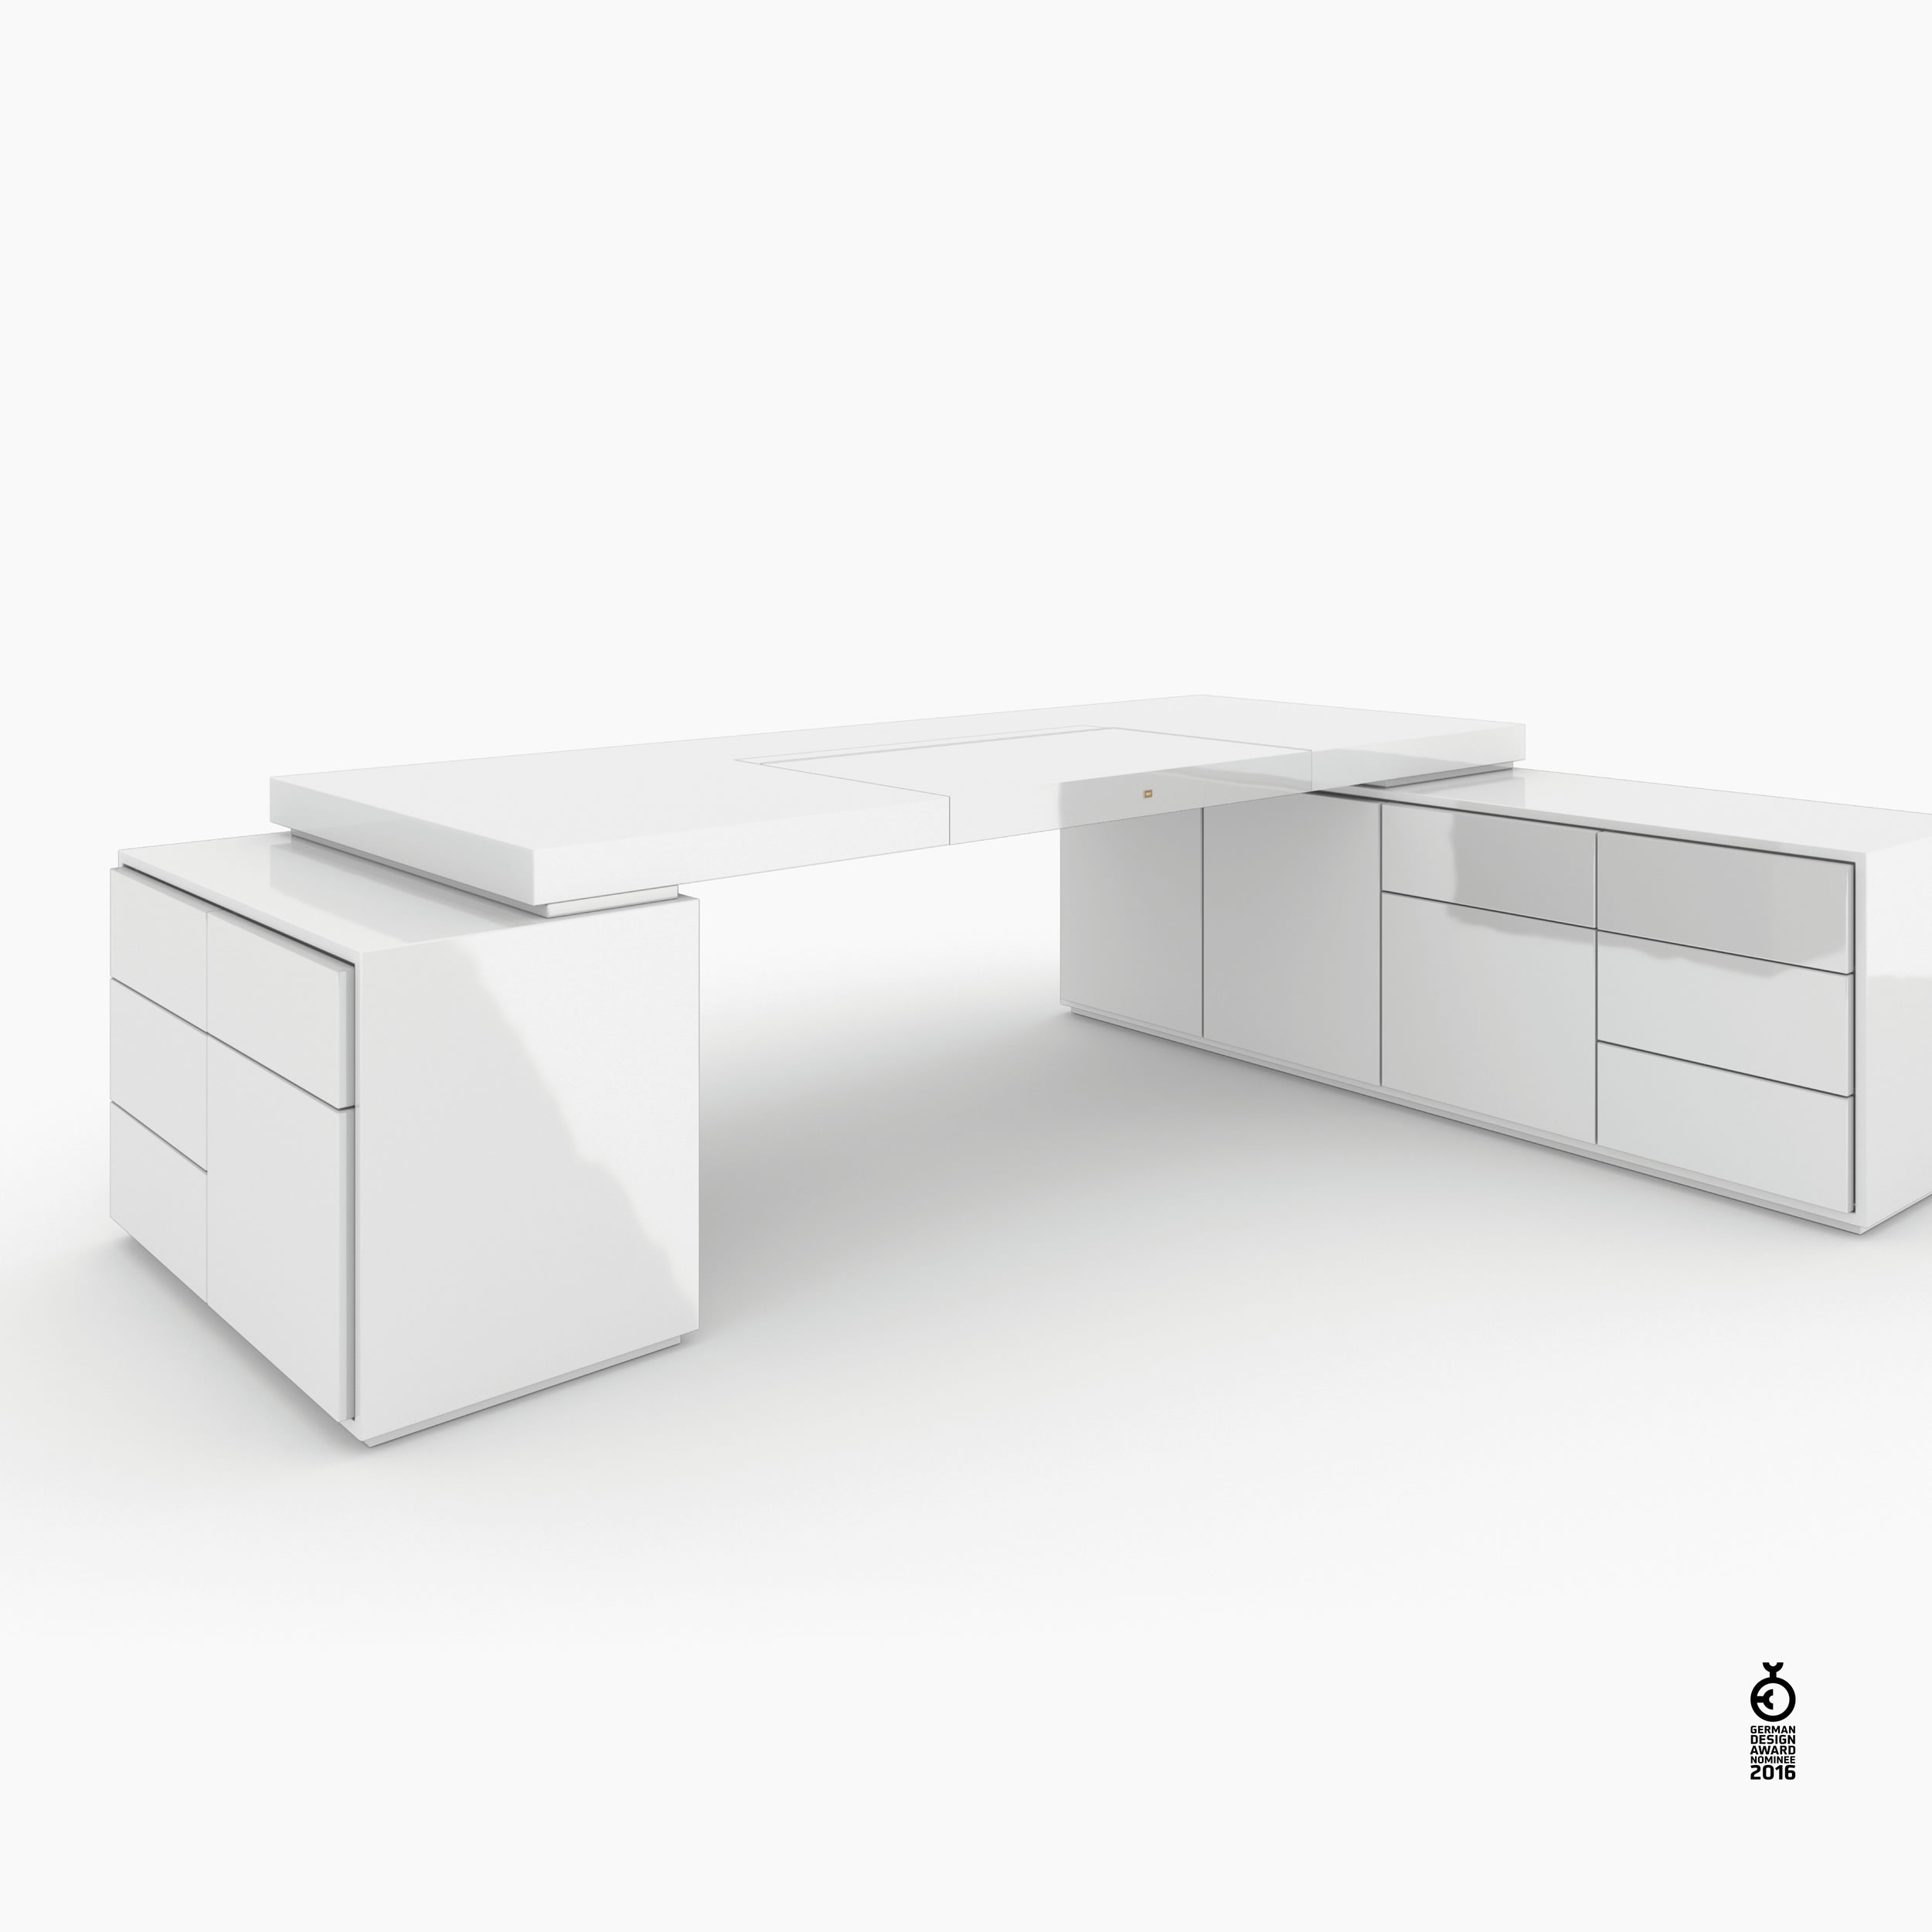 Schreibtisch scheiben und quader weiss architecture design Chefzimmer exclusive design Schreibtische FS 96 FELIX SCHWAKE